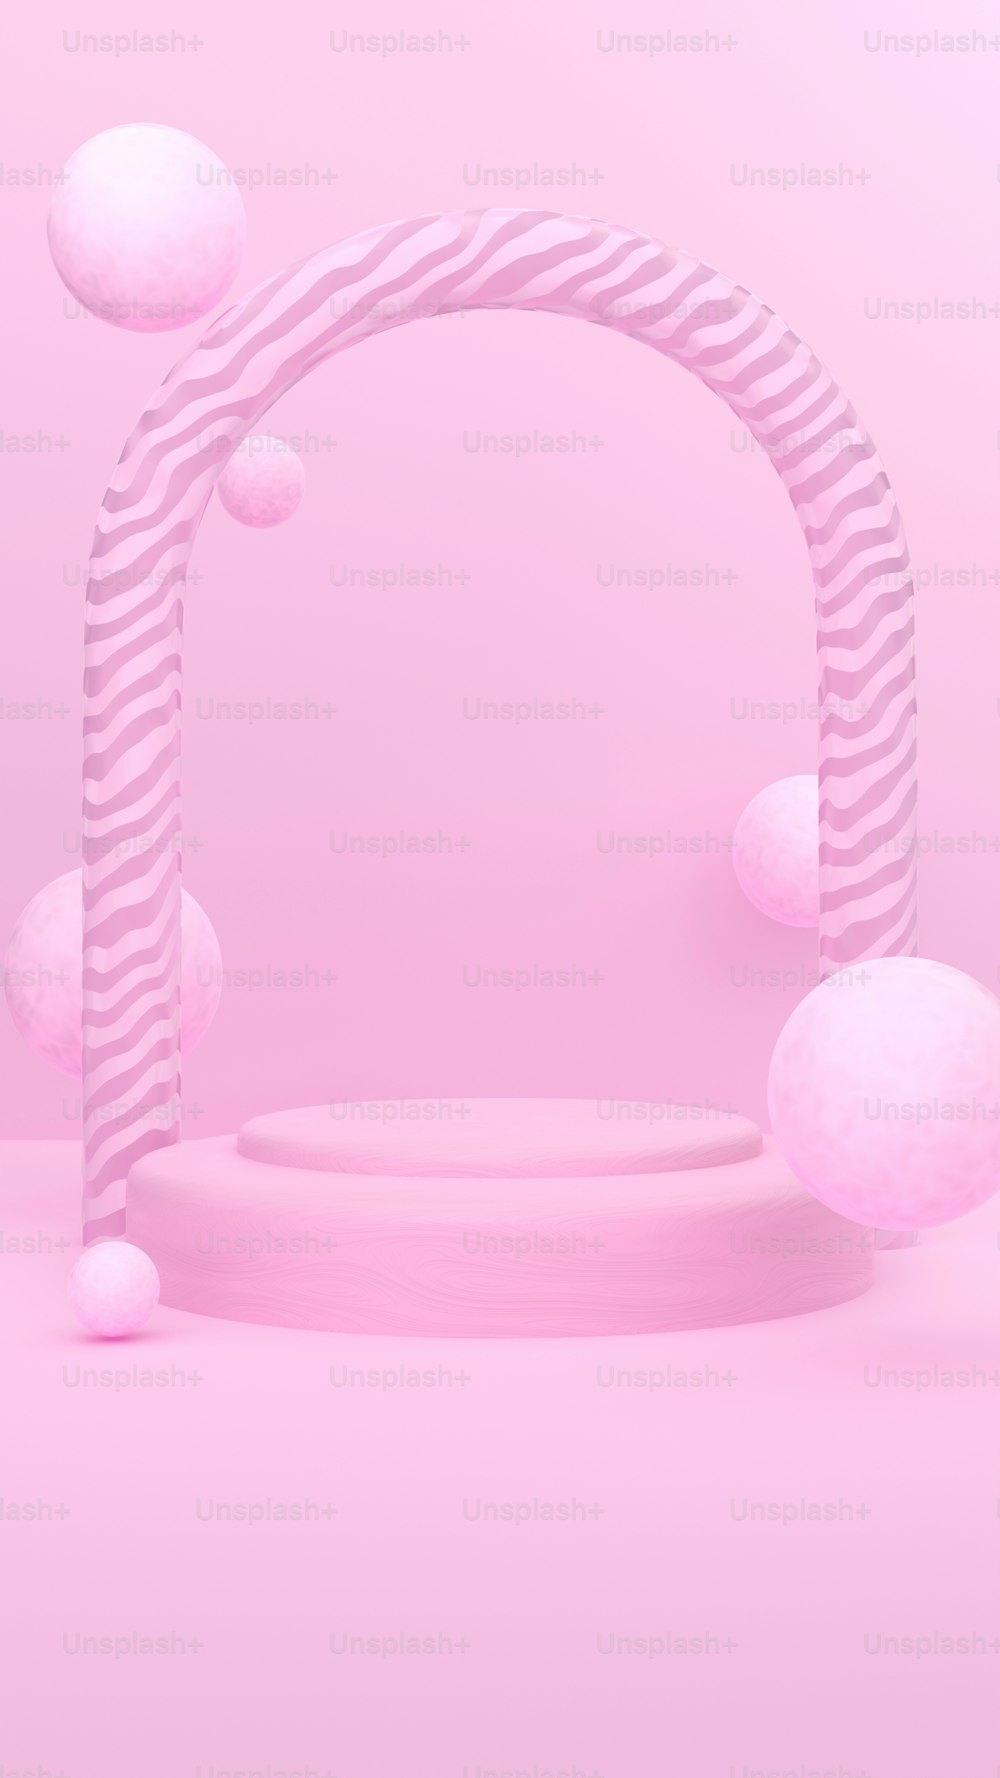 um fundo rosa com um objeto circular no meio